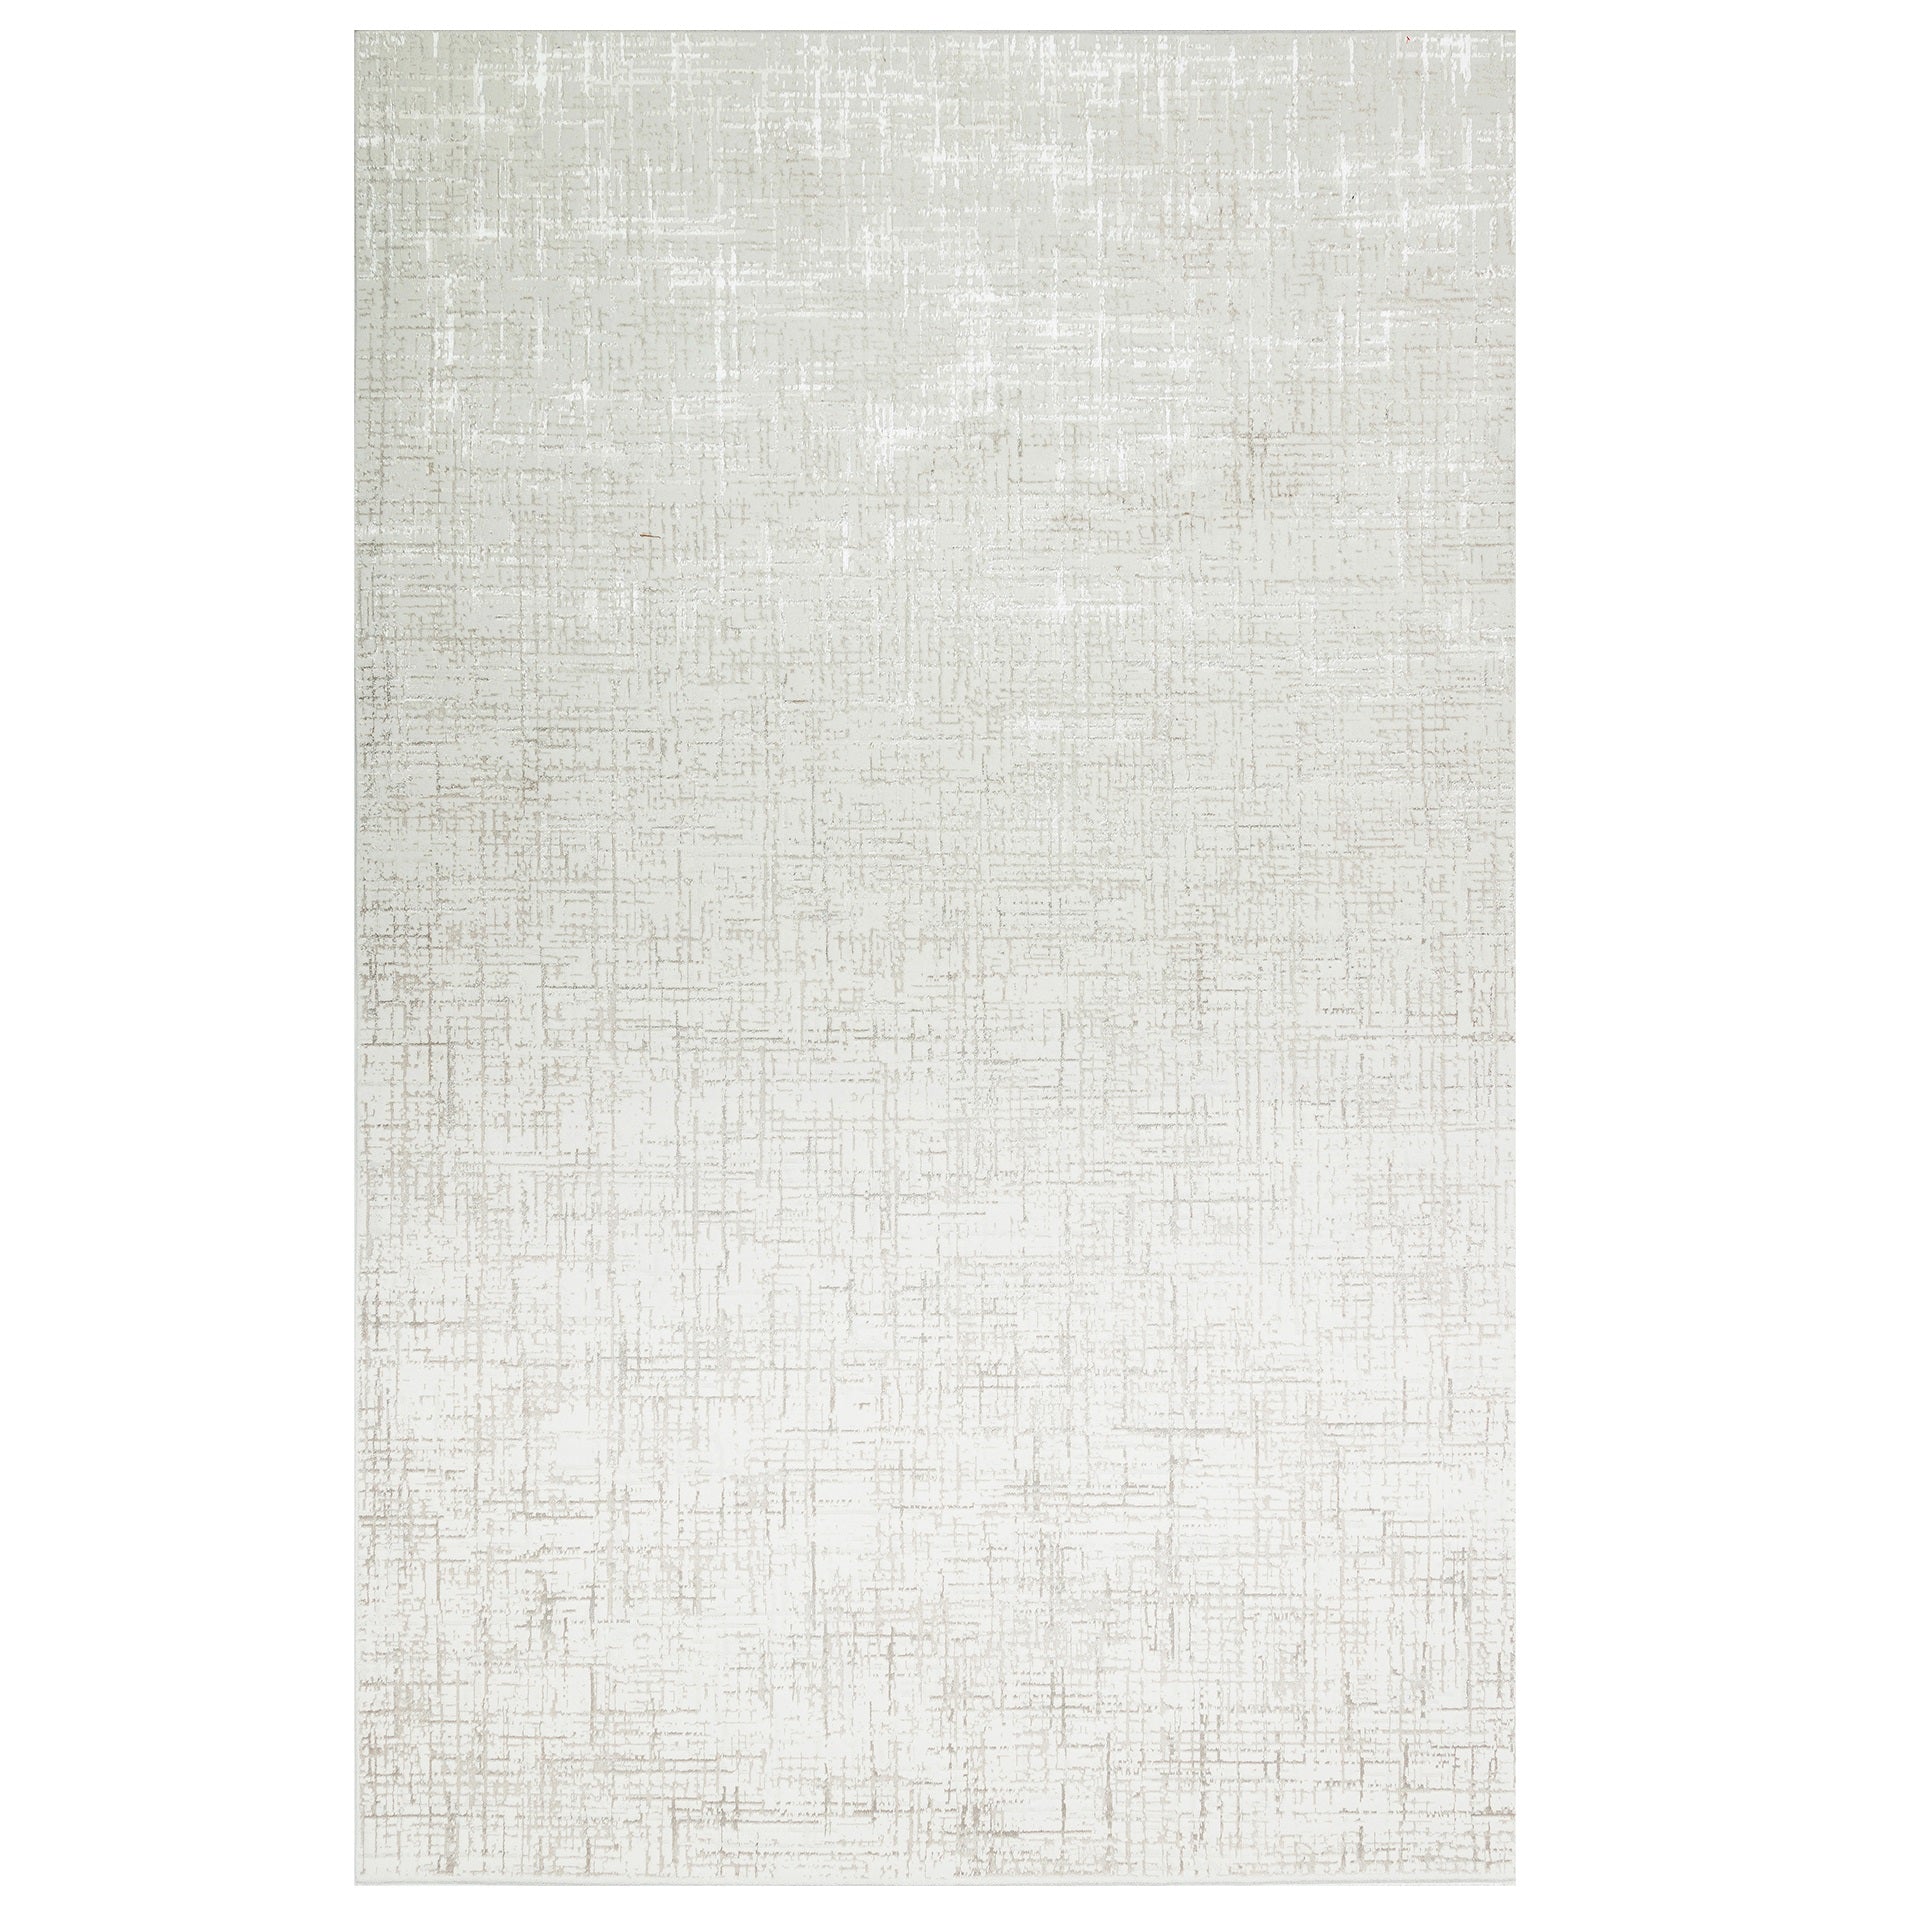 Teppich Byblos 160x225 im Elfenbeinton von Richmond; rechteckiger Teppich aus glänzendem Material.